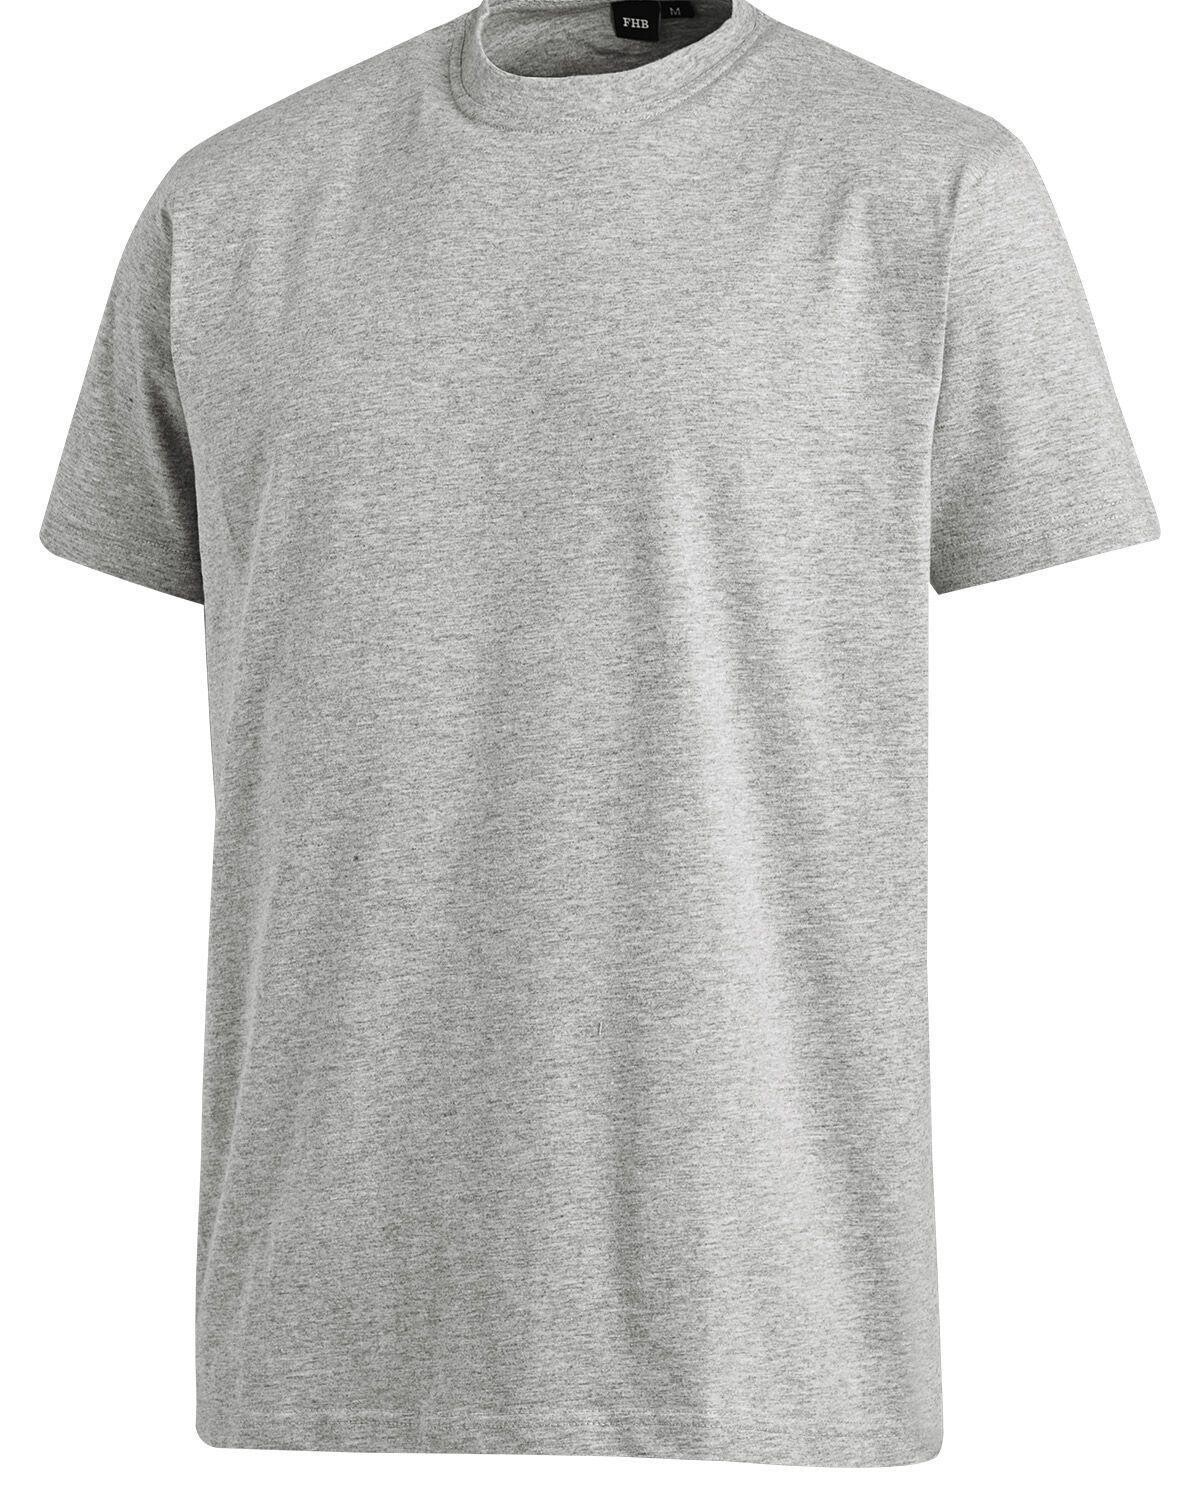 #2 - FHB T-Shirt - Jens (Grå, M)